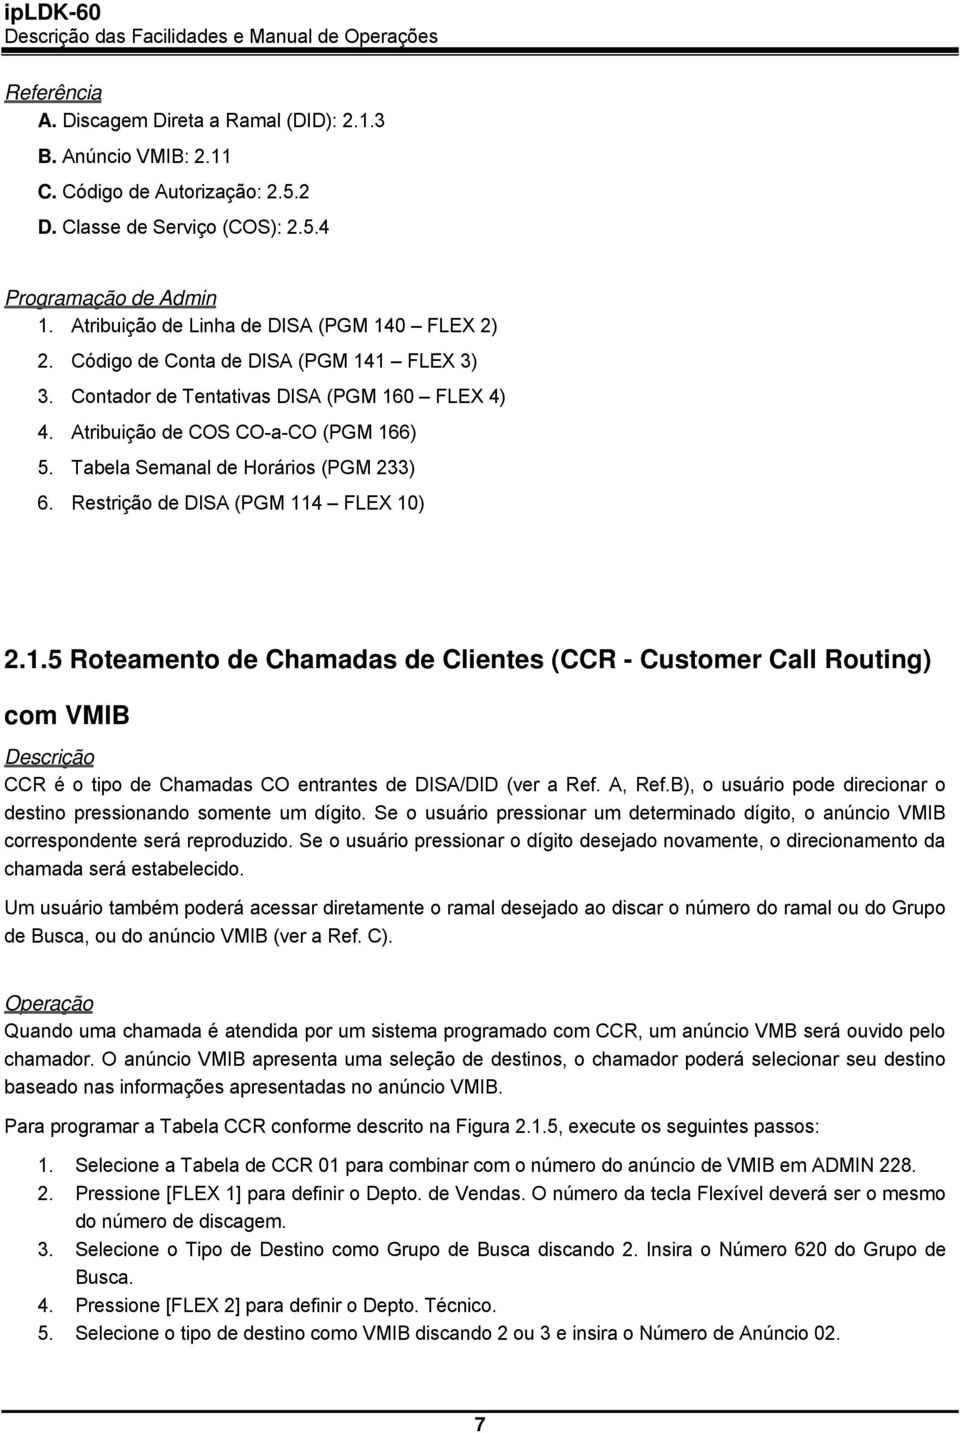 Restrição de DISA (PGM 114 FLEX 10) 2.1.5 Roteamento de Chamadas de Clientes (CCR - Customer Call Routing) com VMIB CCR é o tipo de Chamadas CO entrantes de DISA/DID (ver a Ref. A, Ref.